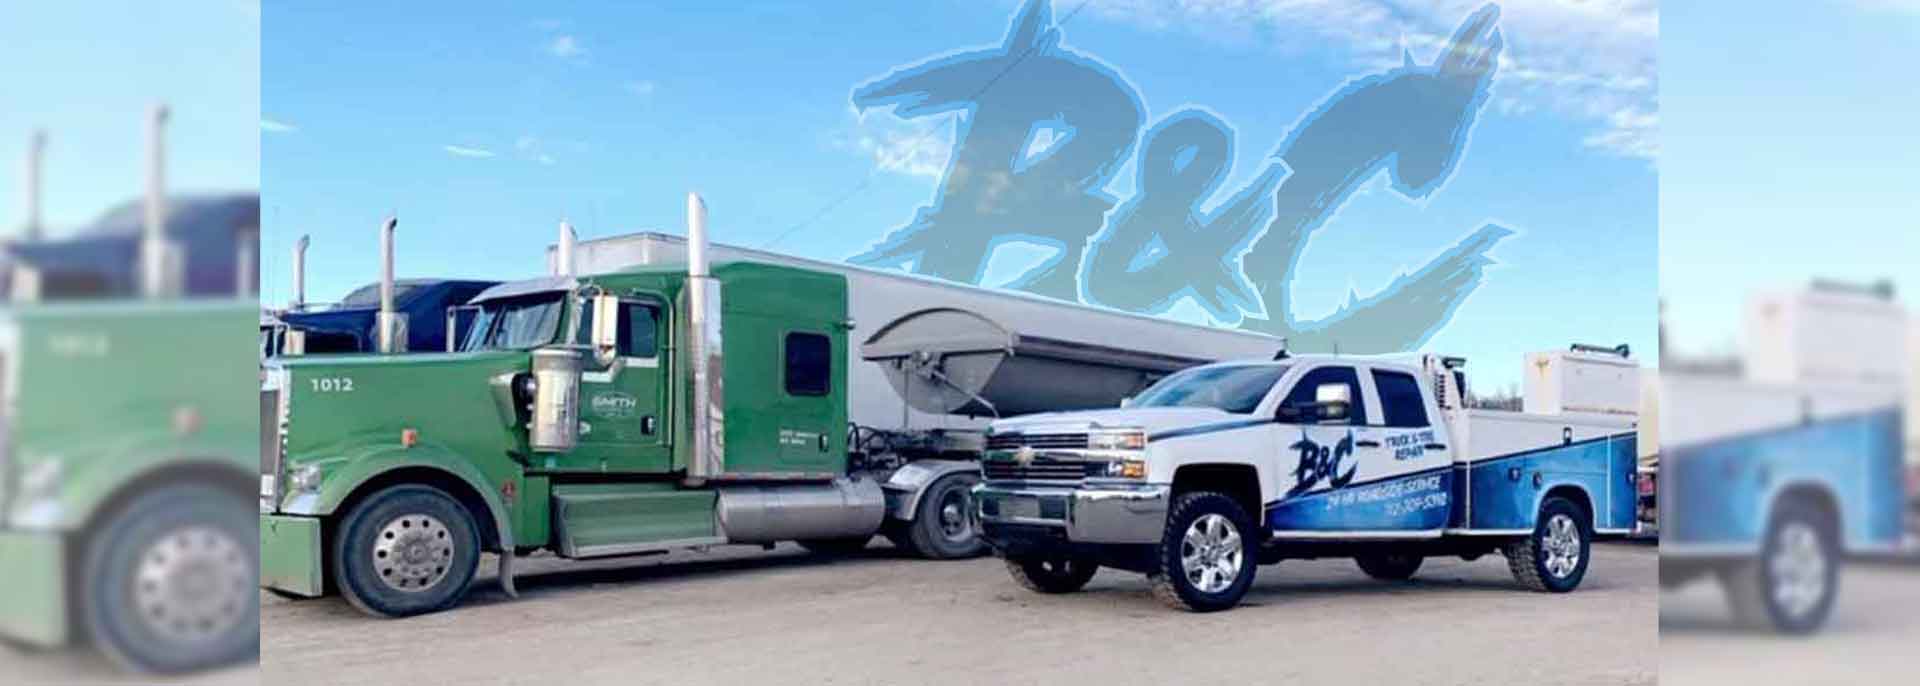 B&C Truck & Tire Repair 2830 226 St, Sidney Iowa 51652